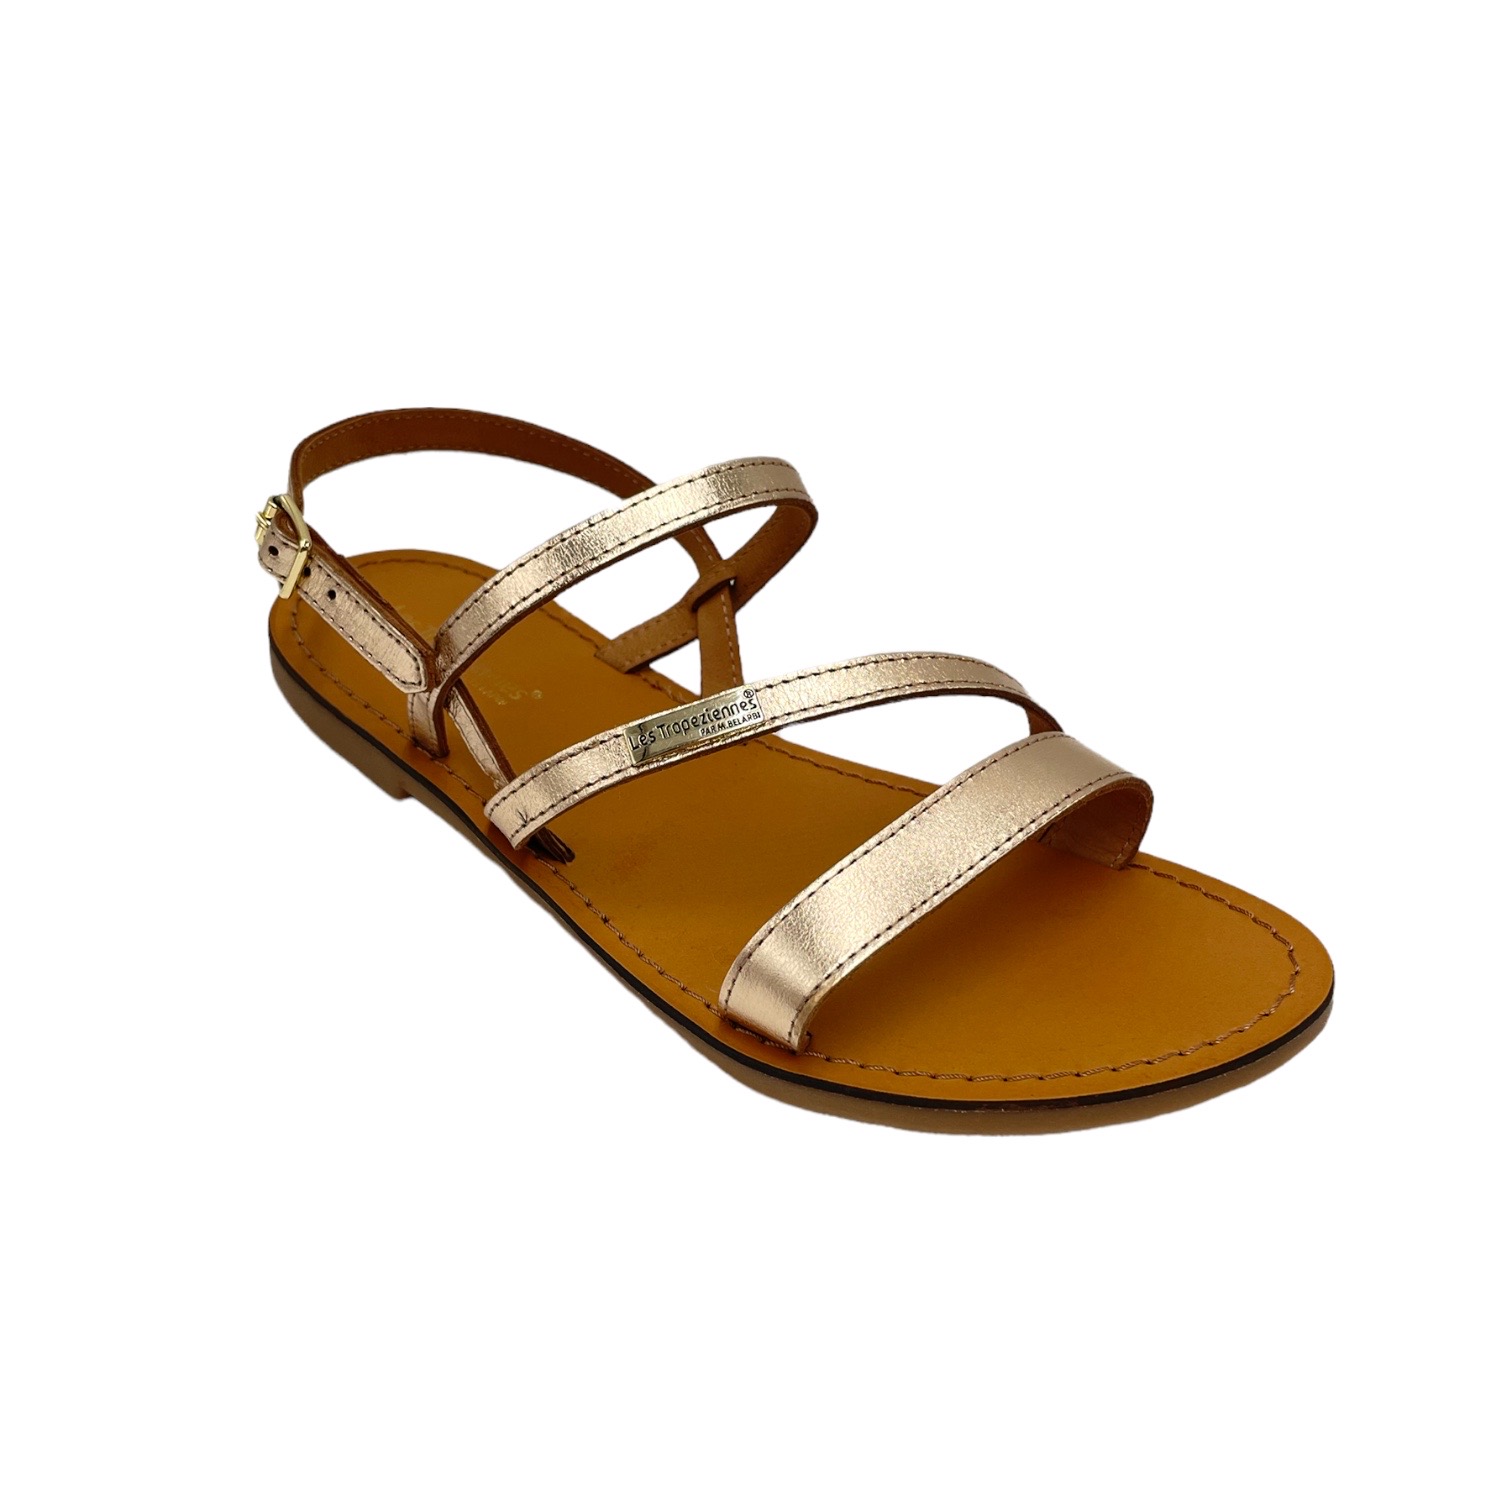 Sandals: Les Tropeziennes Shoes Gold leather heel 1 cm